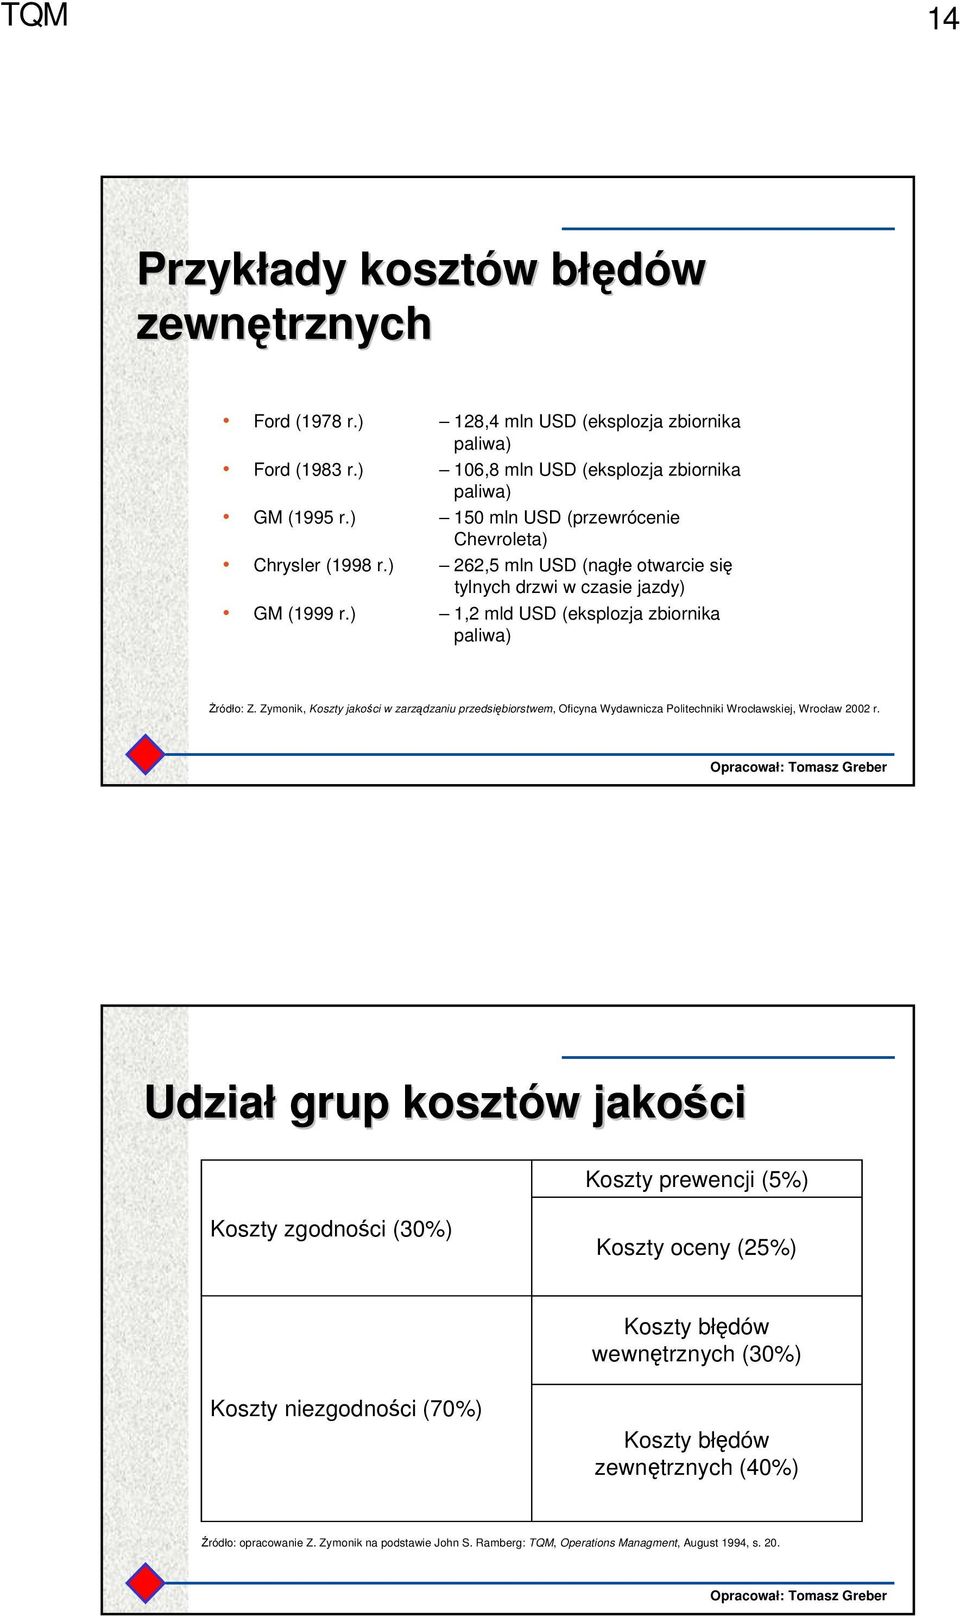 Zymonik, Koszty jakości w zarządzaniu przedsiębiorstwem, Oficyna Wydawnicza Politechniki Wrocławskiej, Wrocław 2002 r.